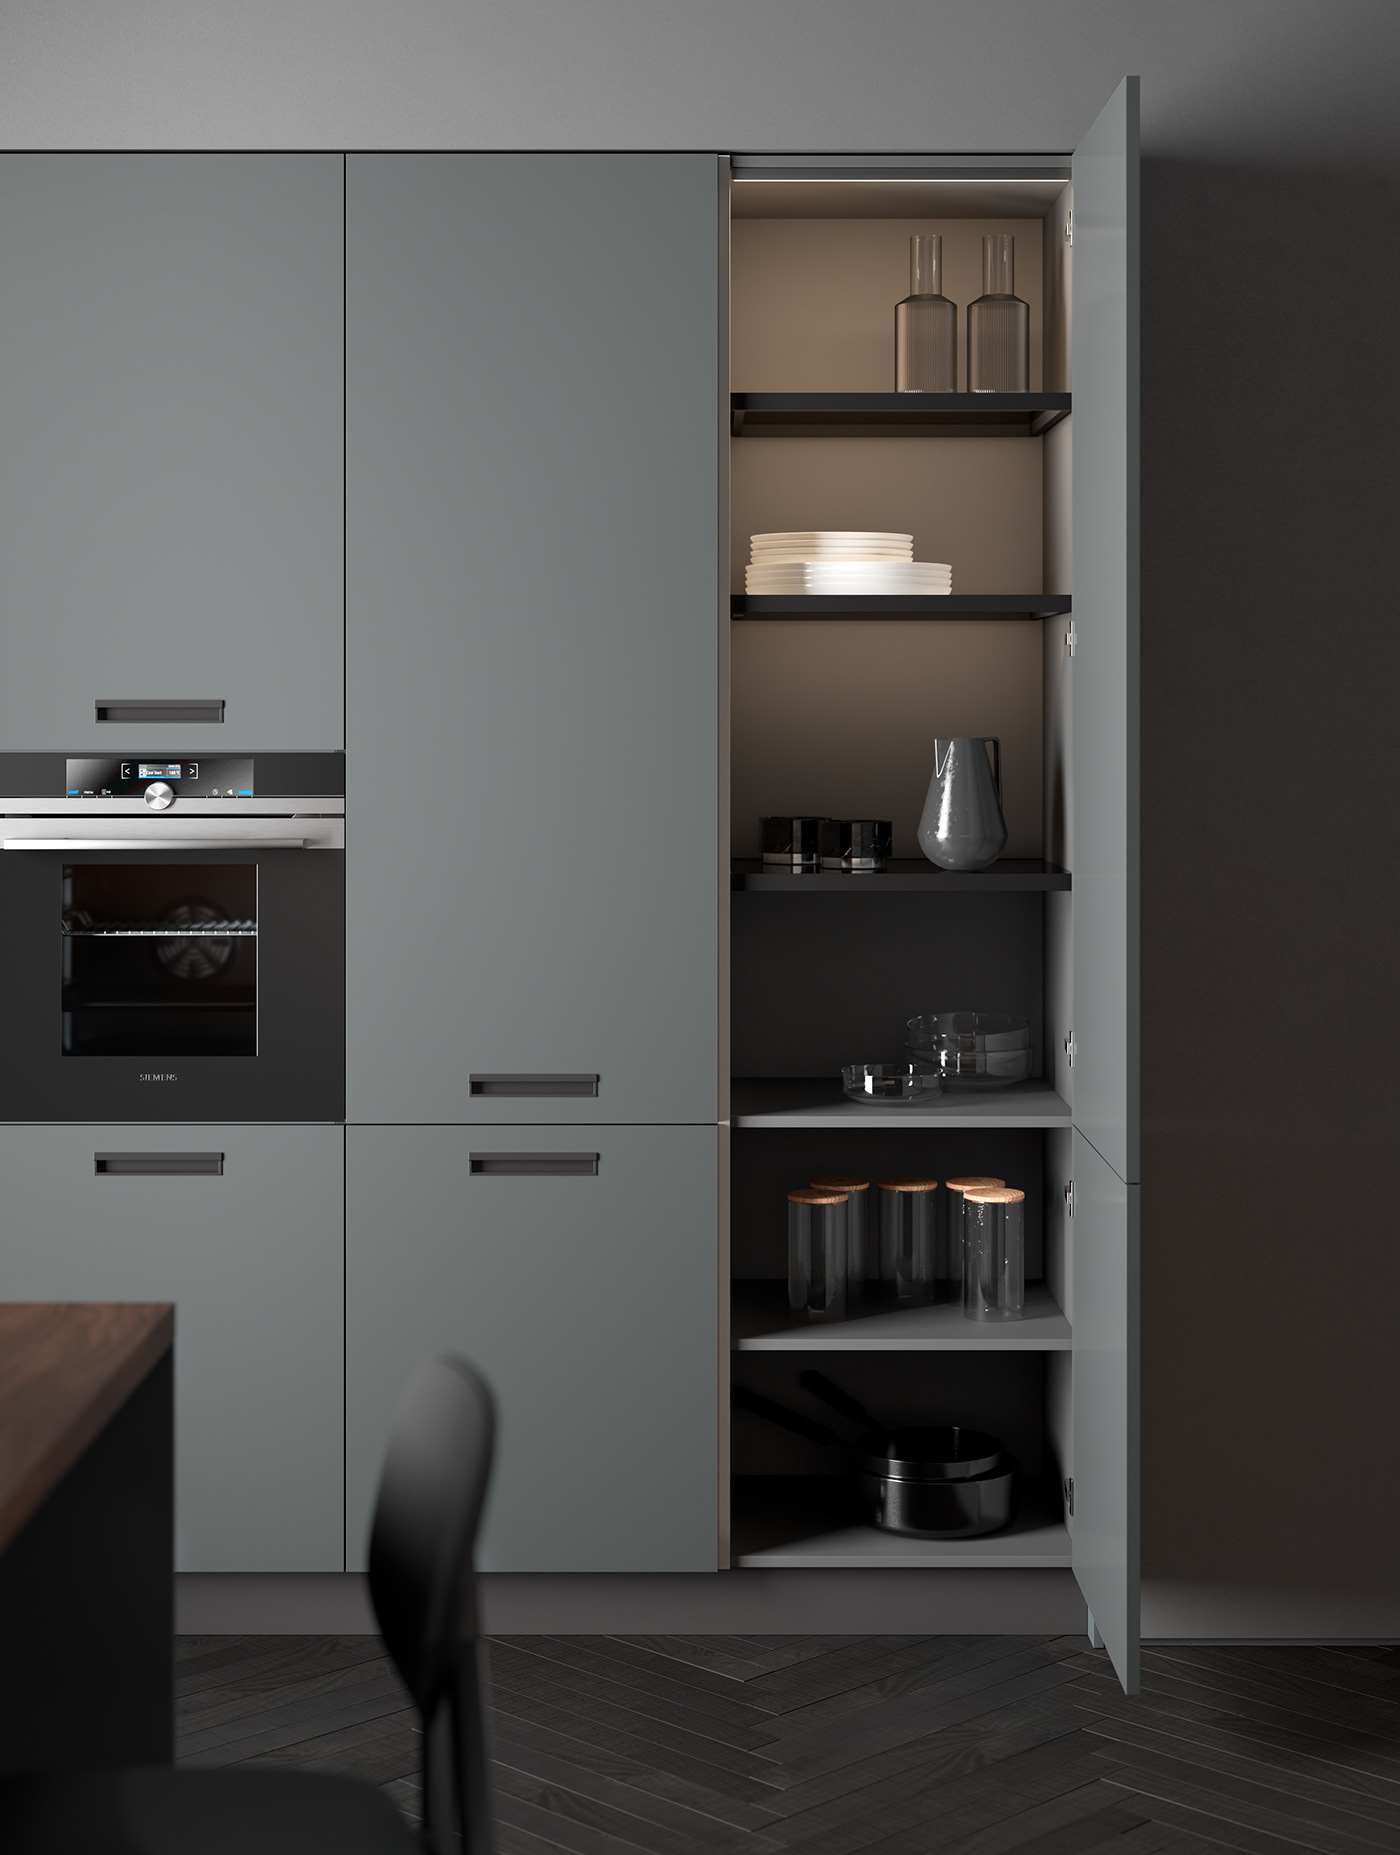 2022 design 3D architecture CGI design inspiration interior design  kitchen Render rendering